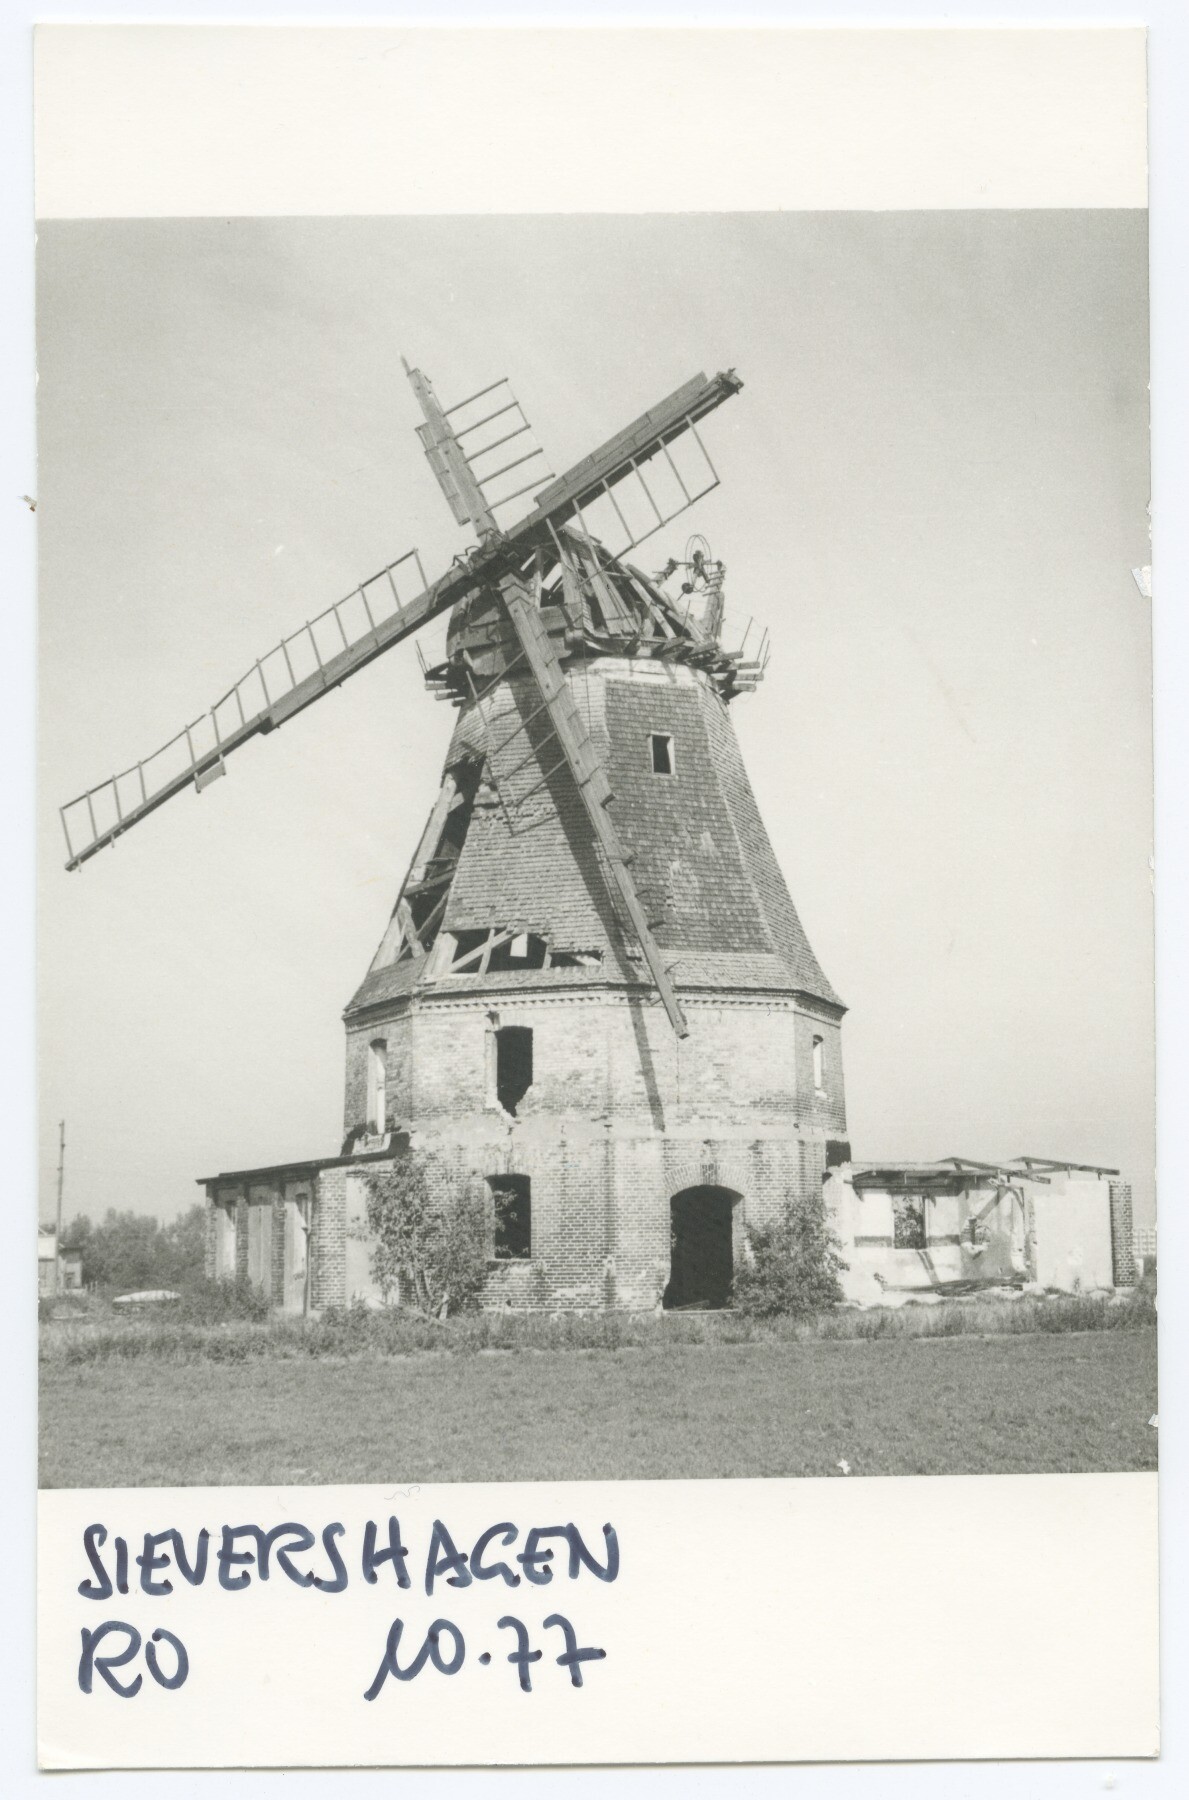 Galerieholländerwindmühle Sievershagen (Historische Mühle von Sanssouci CC BY-NC-ND)